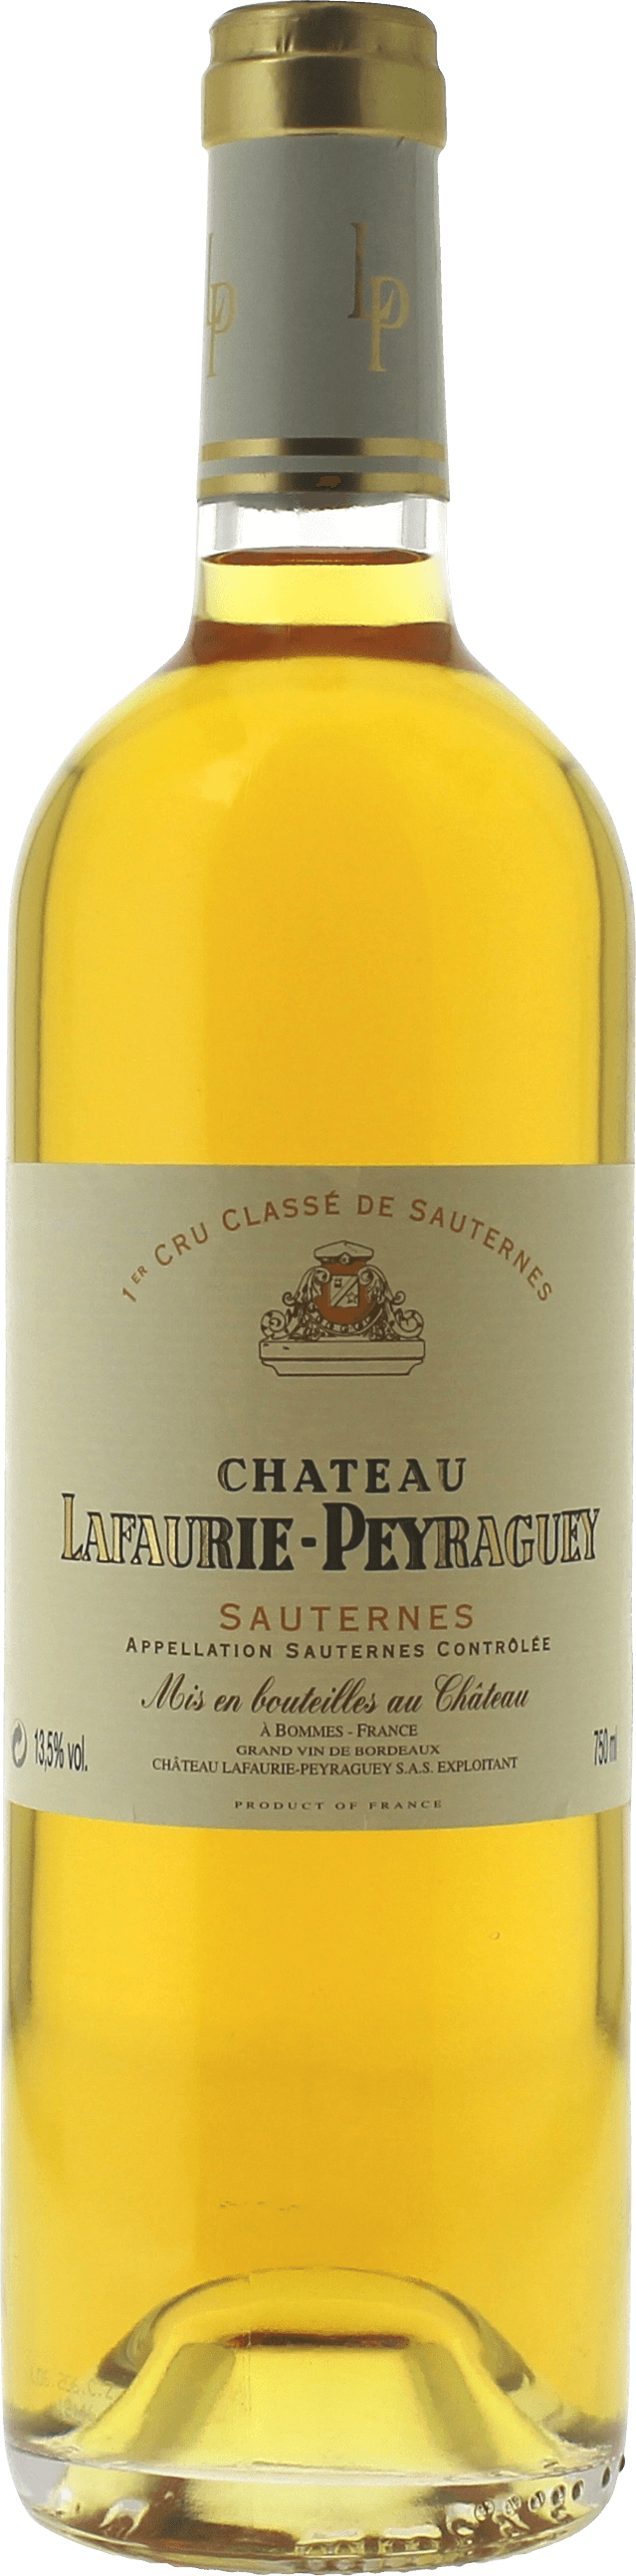 Lafaurie peyraguey 1937  Sauternes, Bordeaux blanc